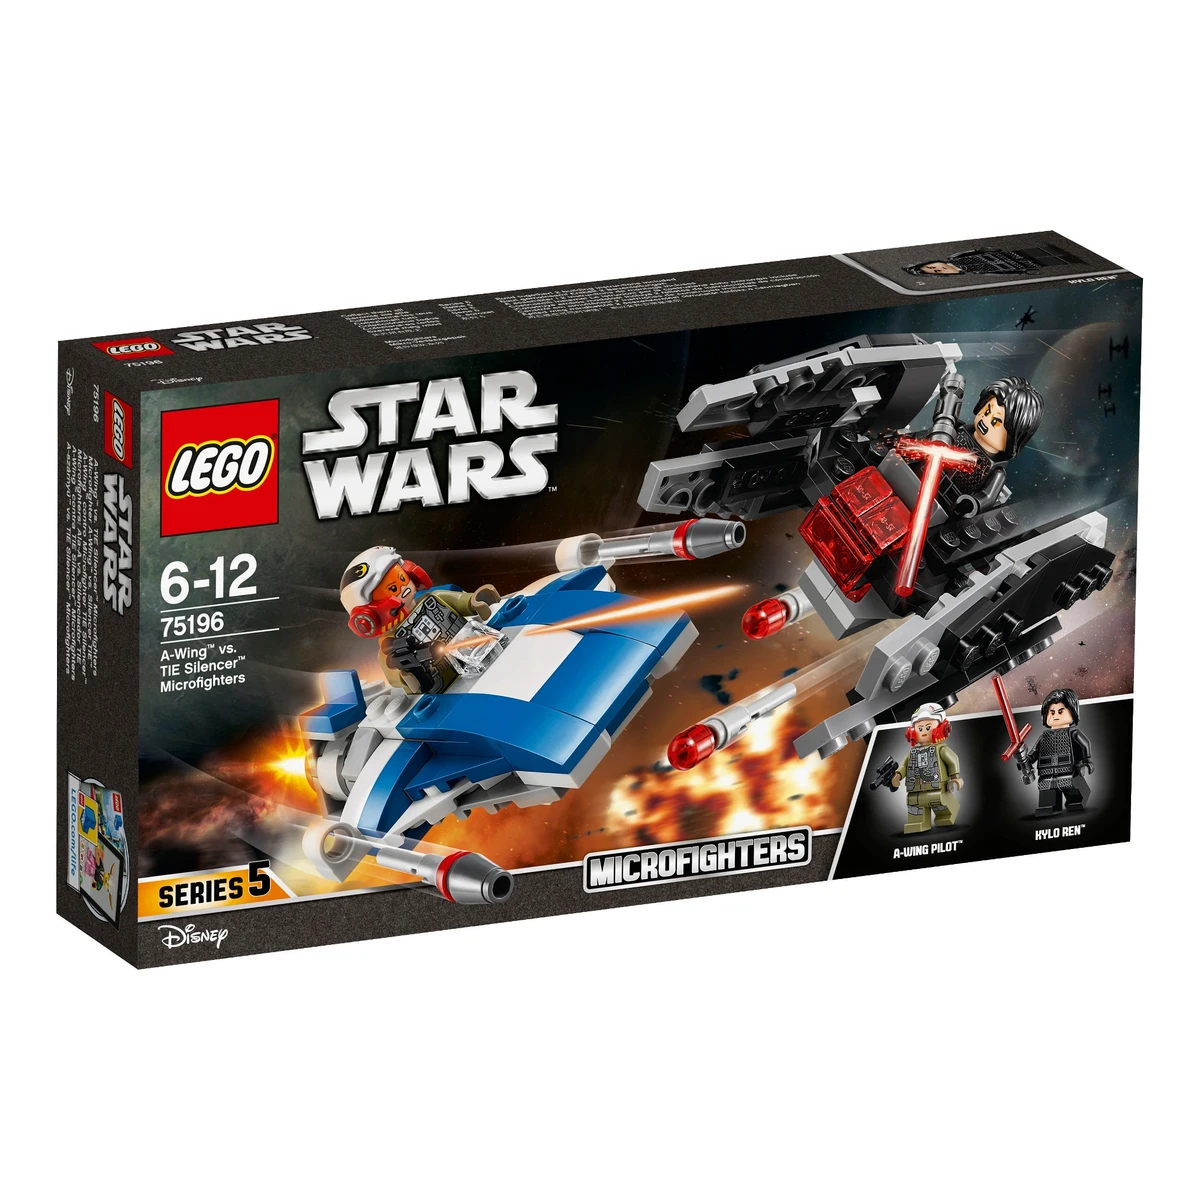 LEGO Star Wars A szárnyú vs. TIE Silencer Microfighters 75196